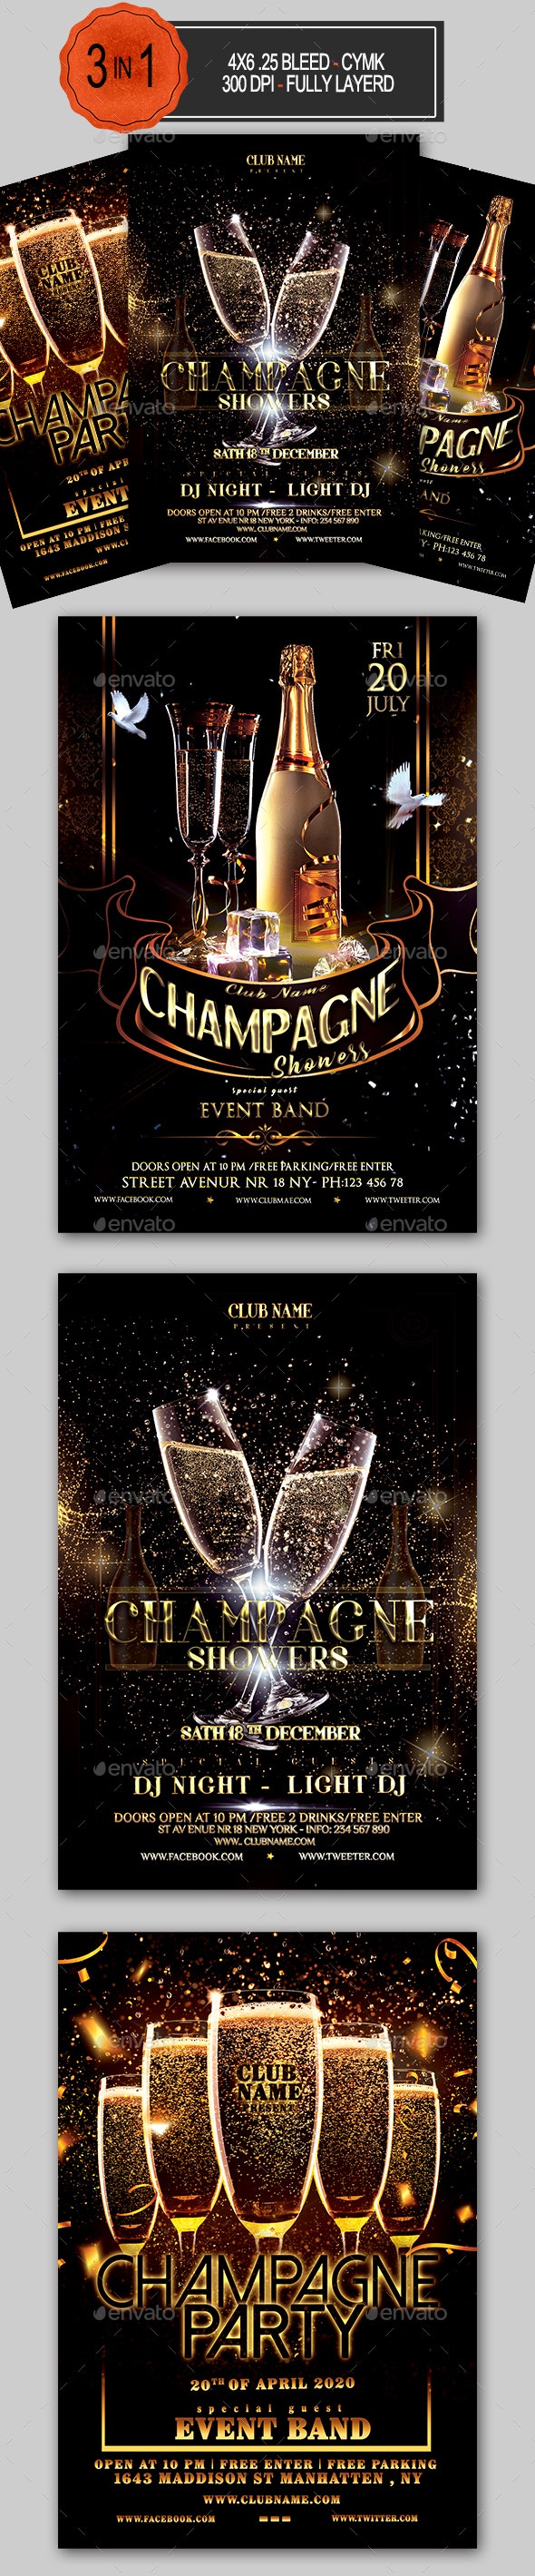 香槟派对活动邀请传单套装 Champagne Party F